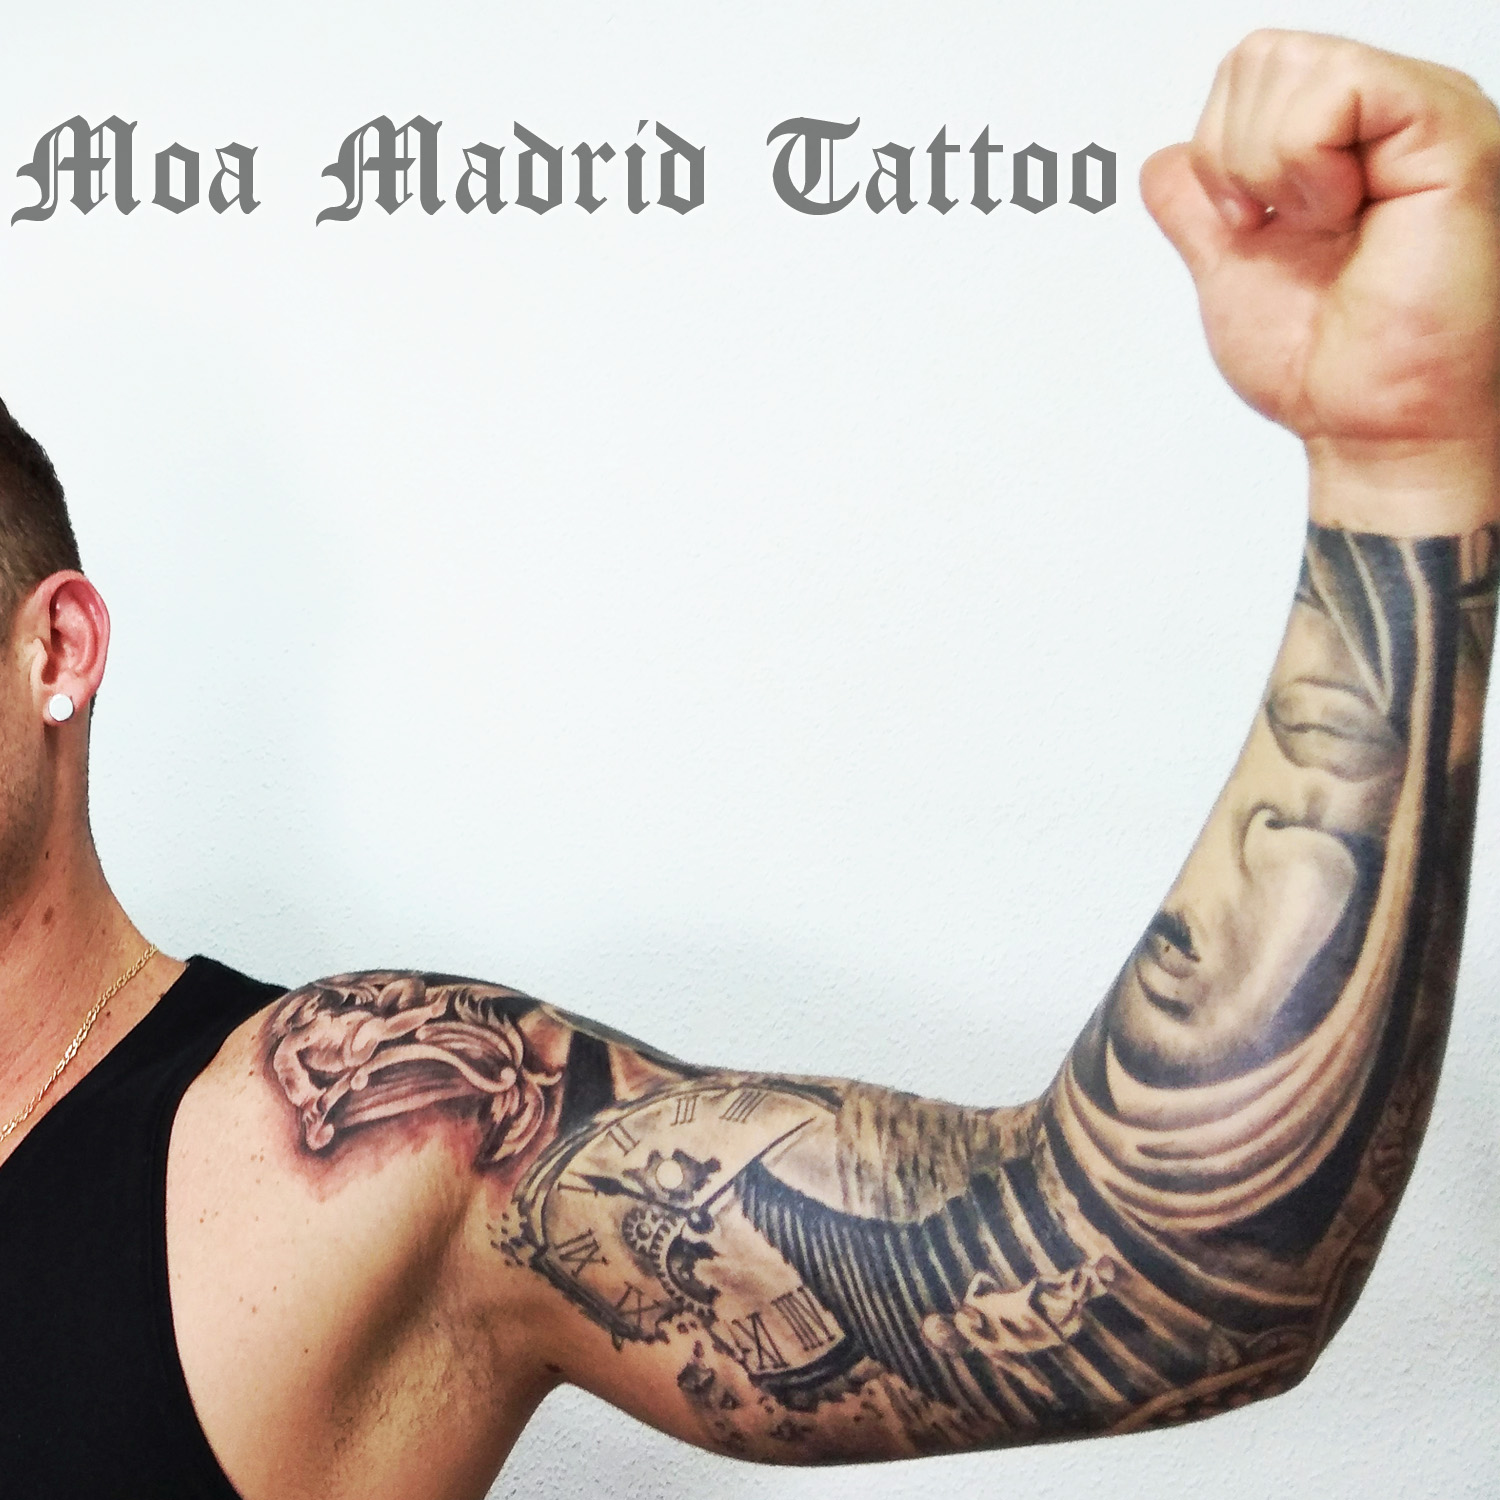 Brazo entero tatuado en realismo en Madrid